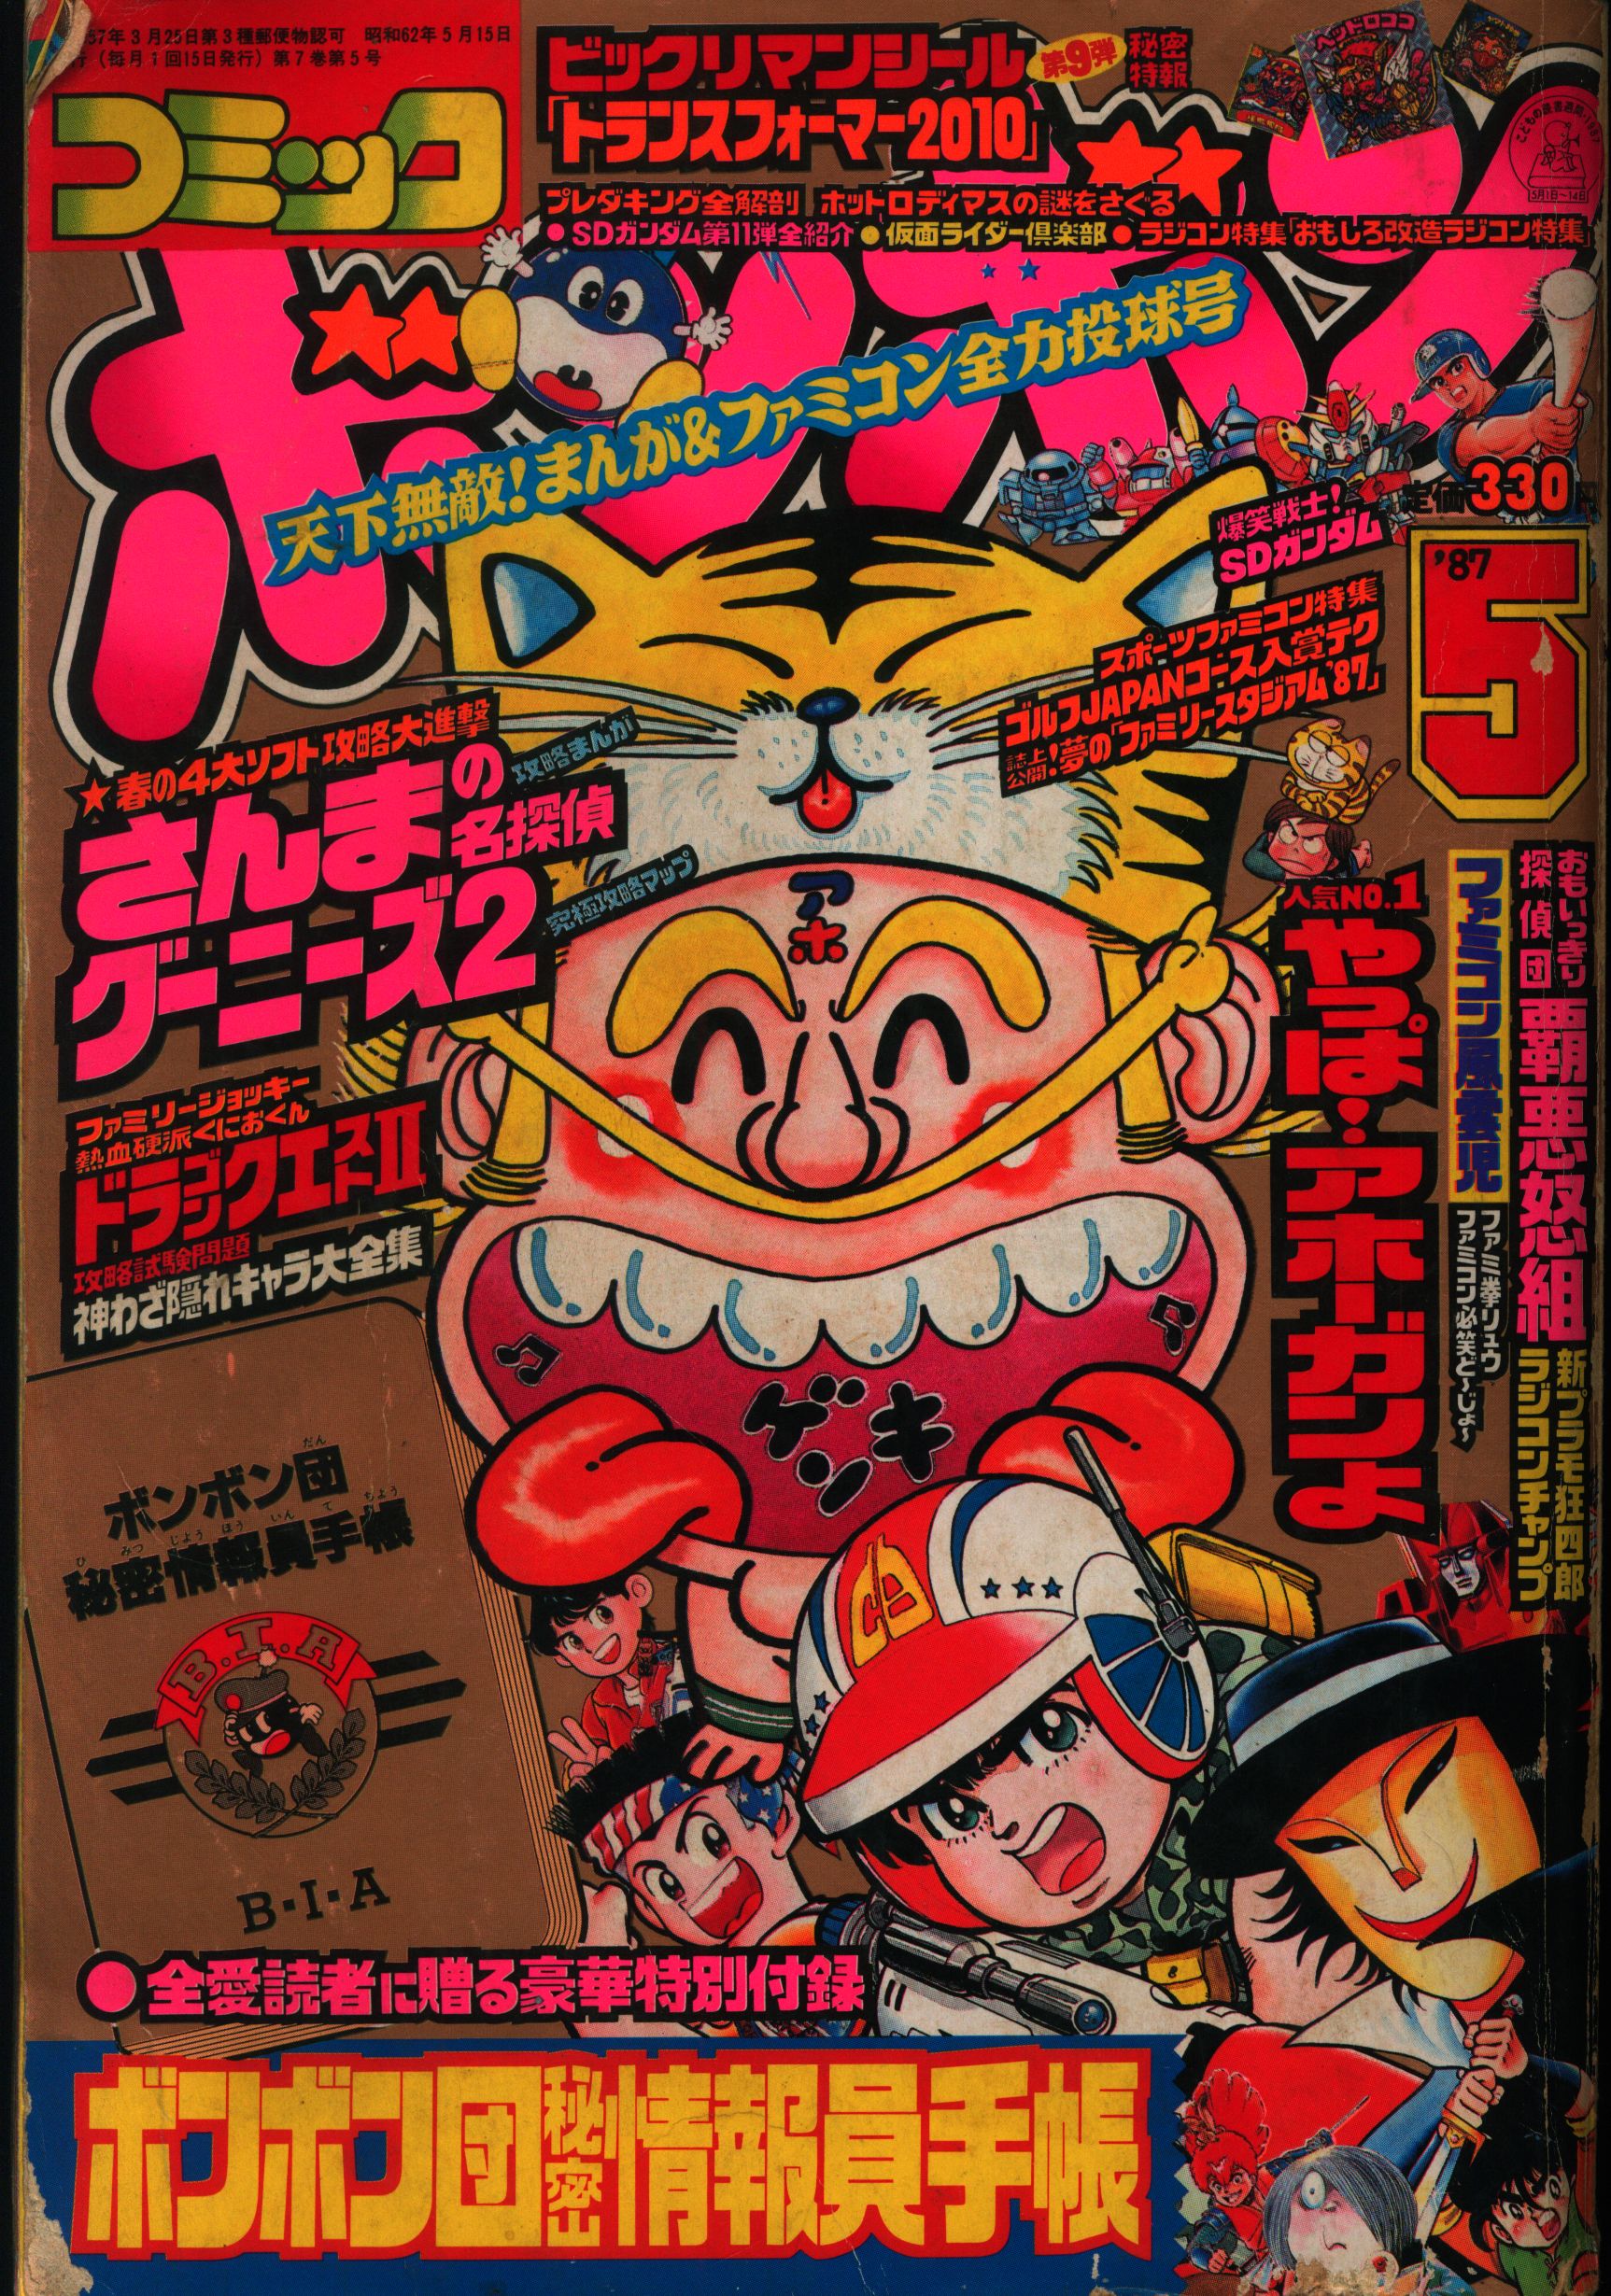 コミックボンボン 1986年夏休み増刊ファミコンウルトラ特集号 